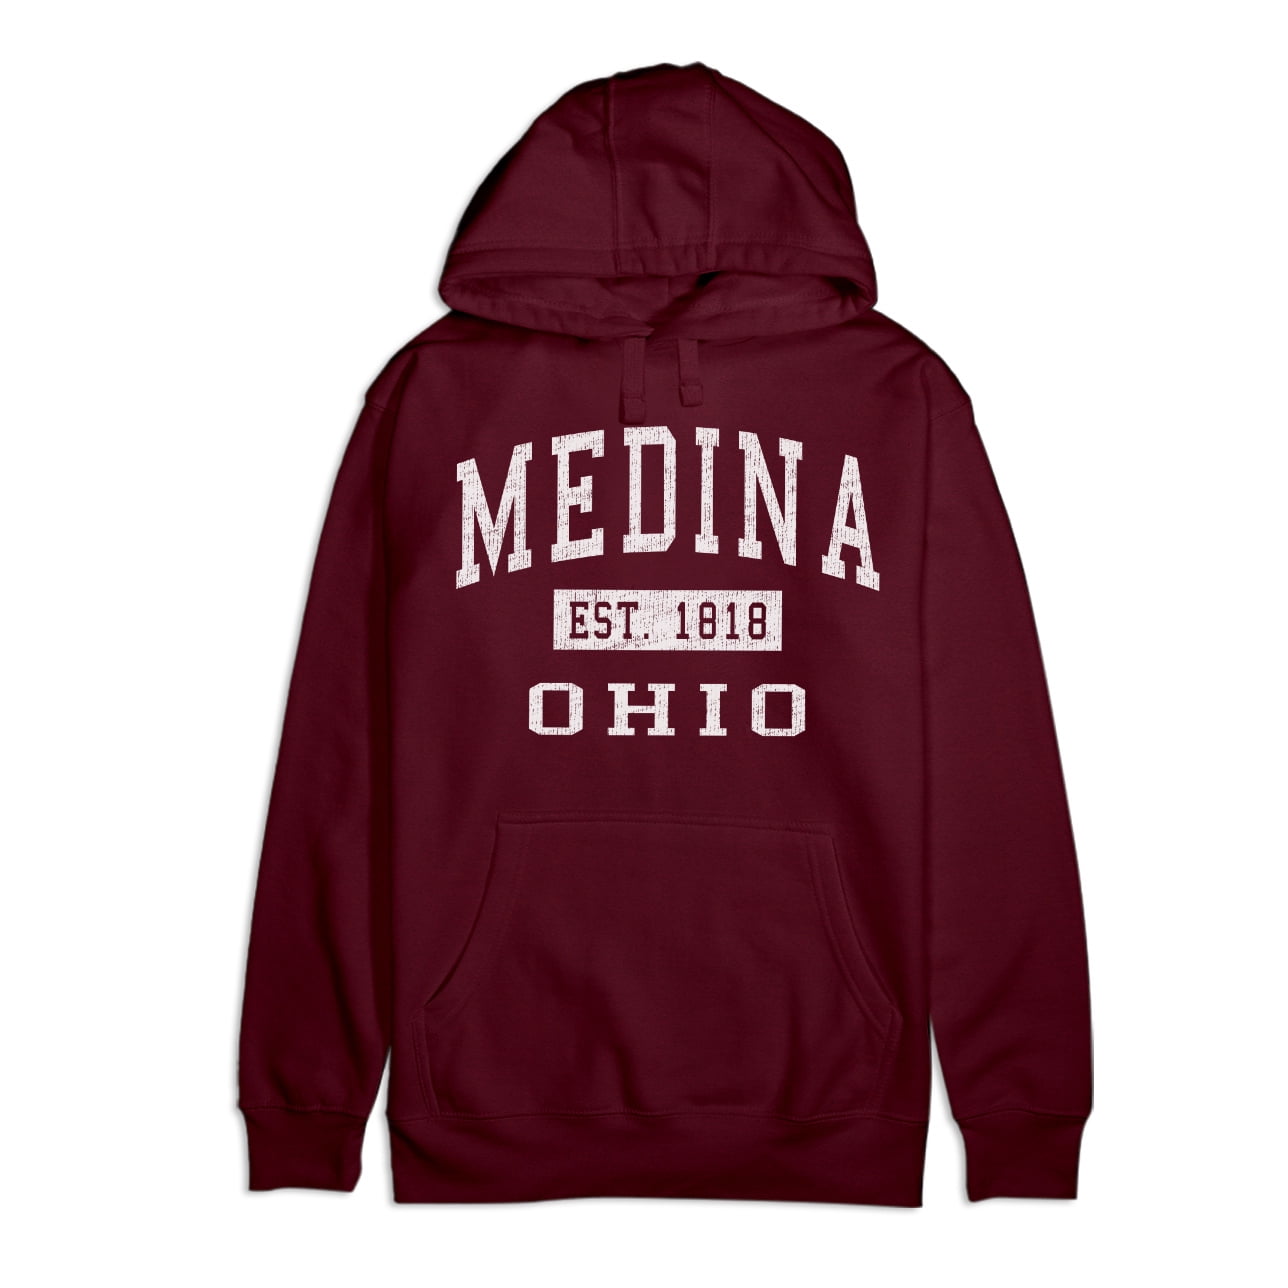 Medina Ohio Classic Established Premium Cotton Hoodie pic